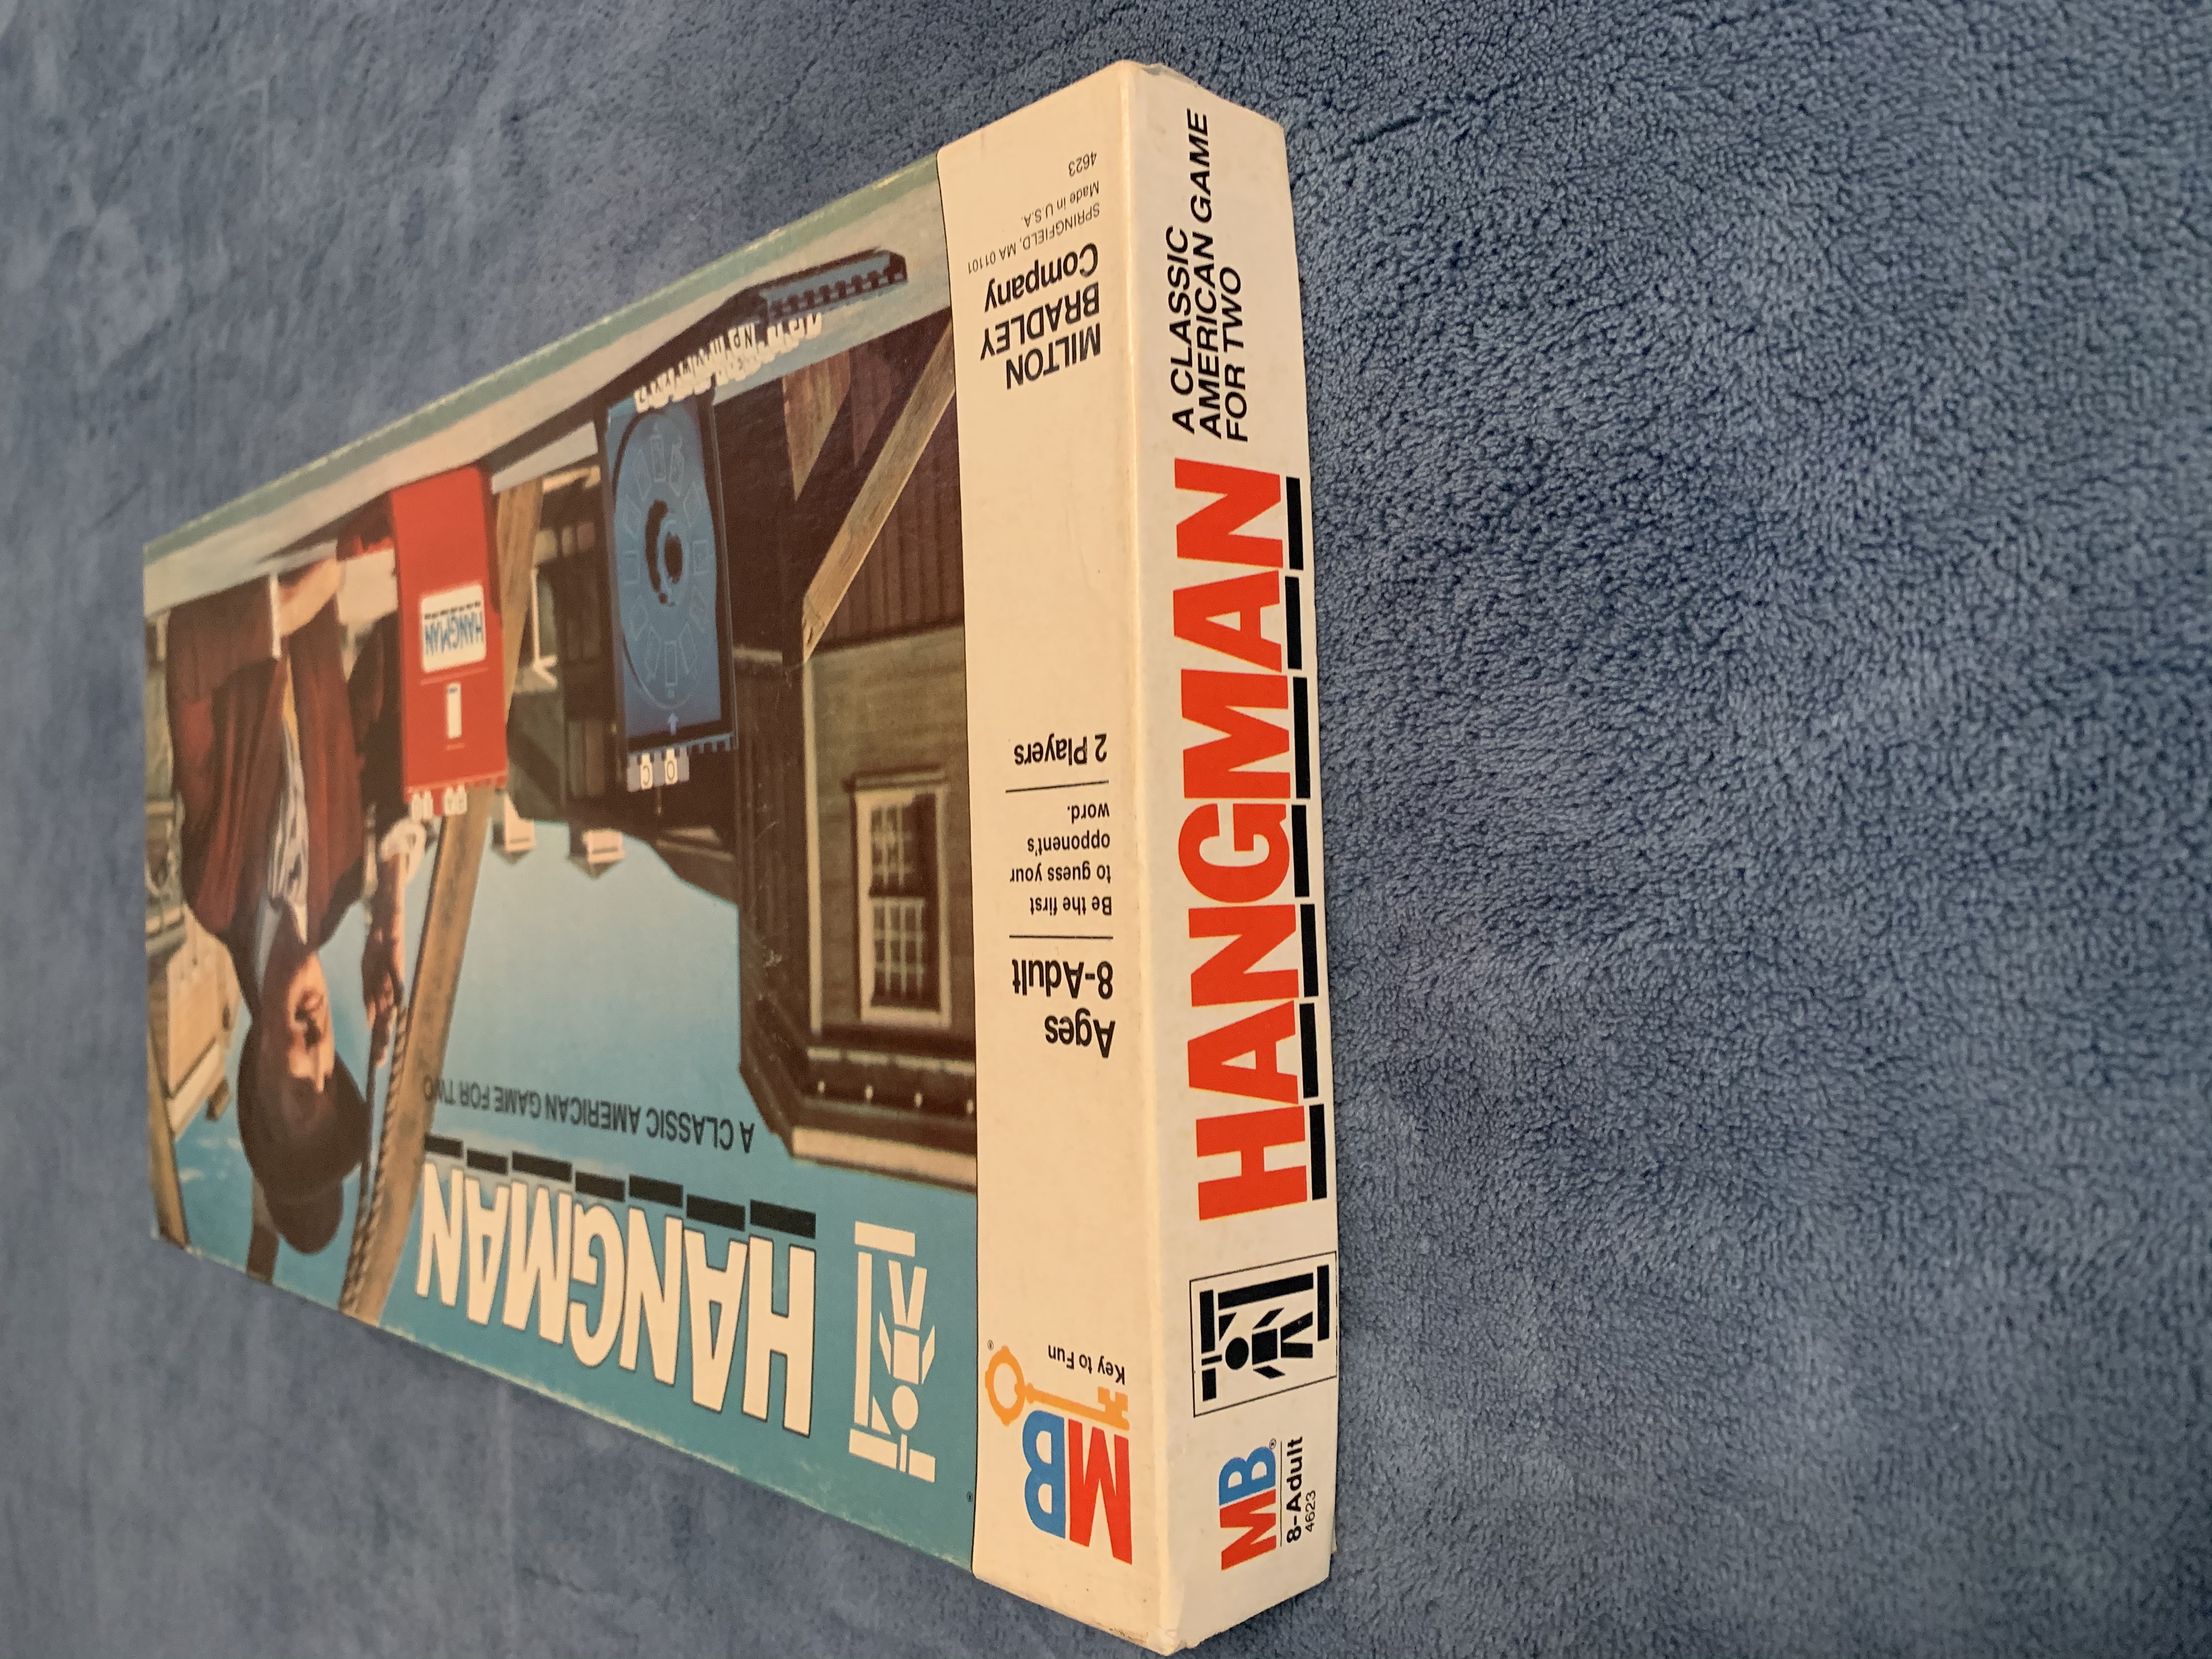  Milton Bradley 1988 Hangman Board Game : Toys & Games